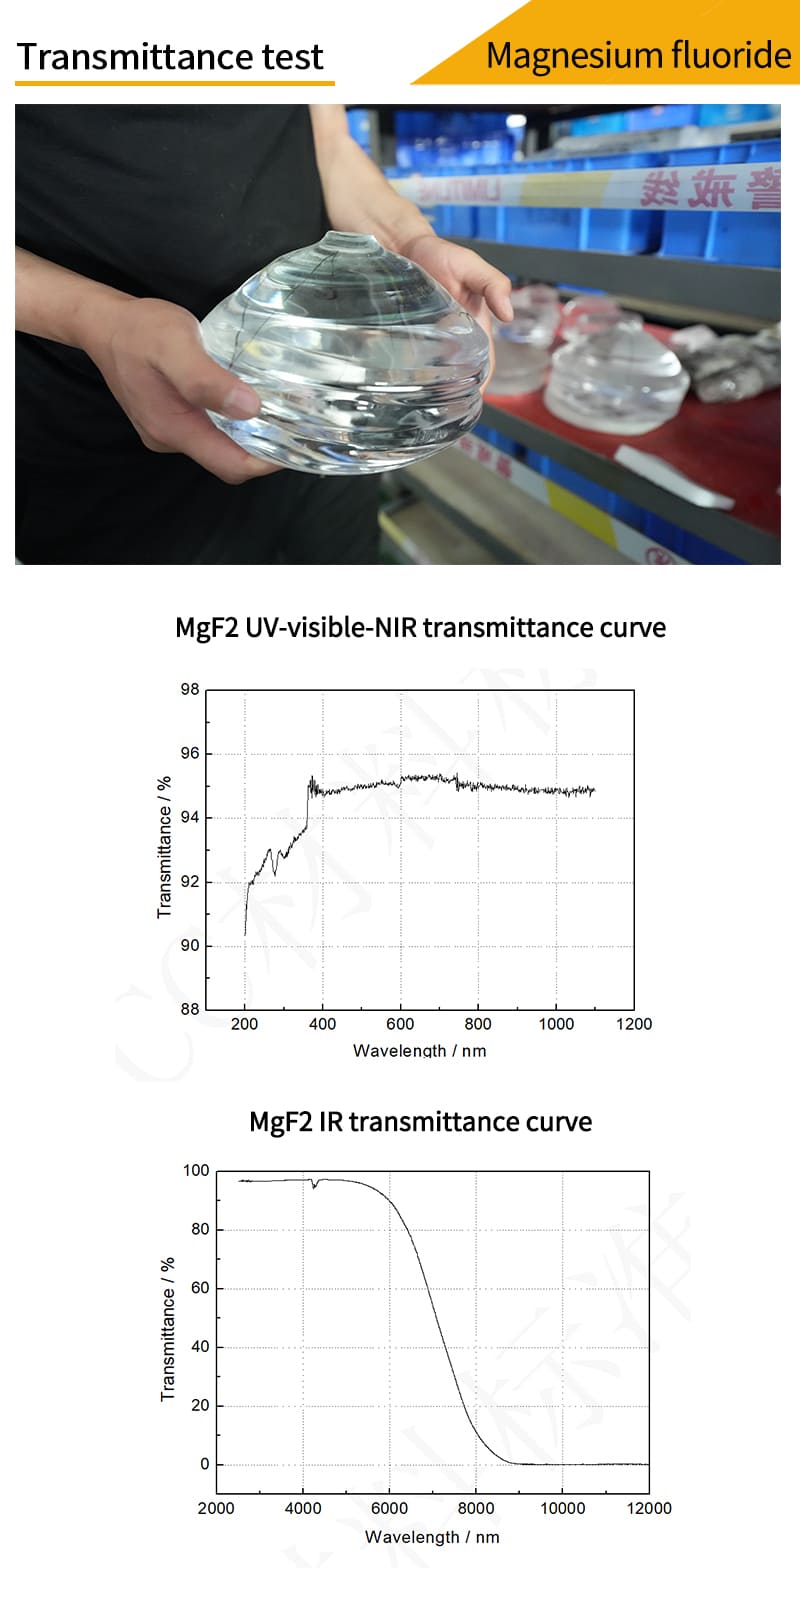 Magnesium fluoride round drilled window transmittance test